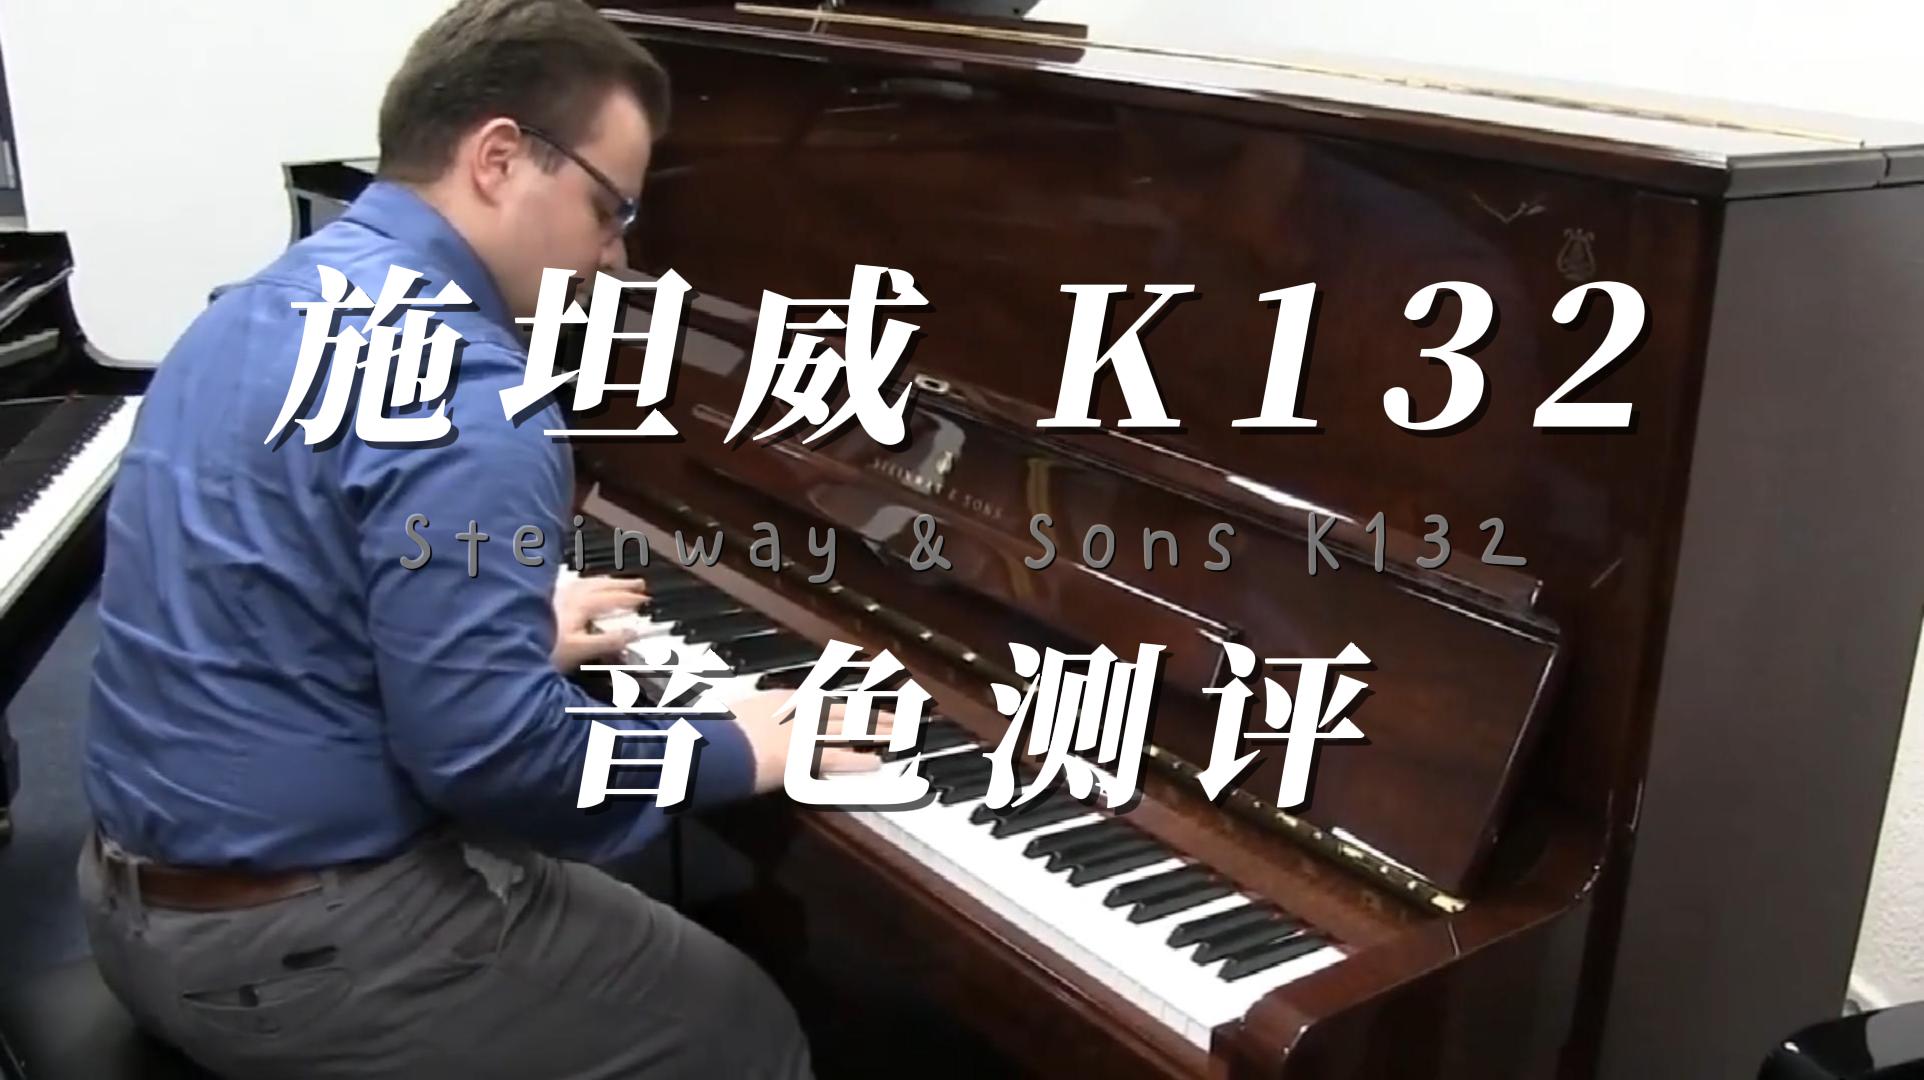 Steinway & Sons 施坦威K132立式钢琴音色测评 柏通乐器整理